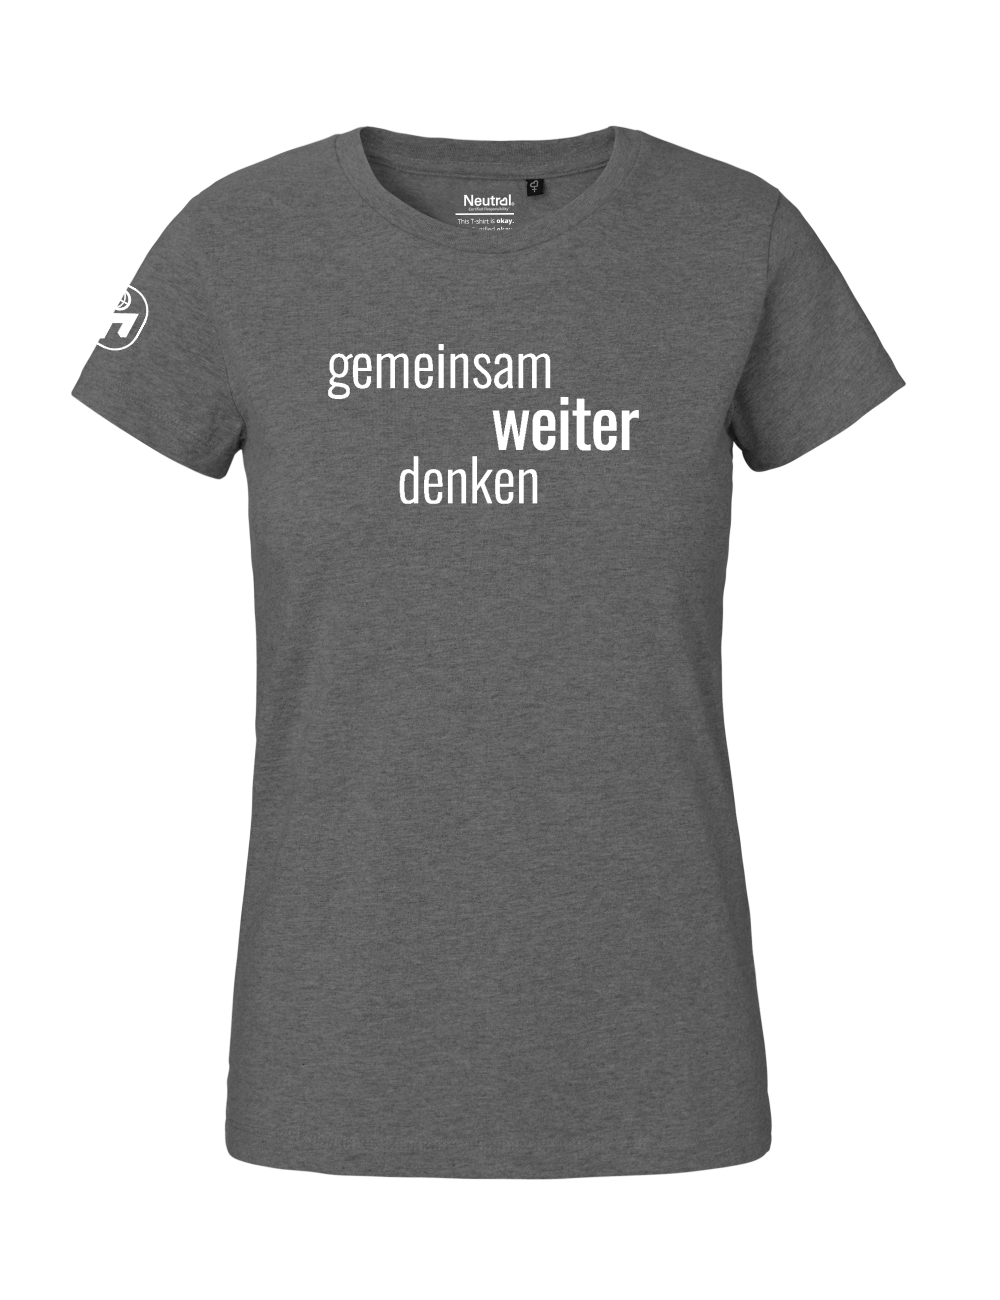 T-Shirt Damen "Gemeinsam weiter denken" Premium